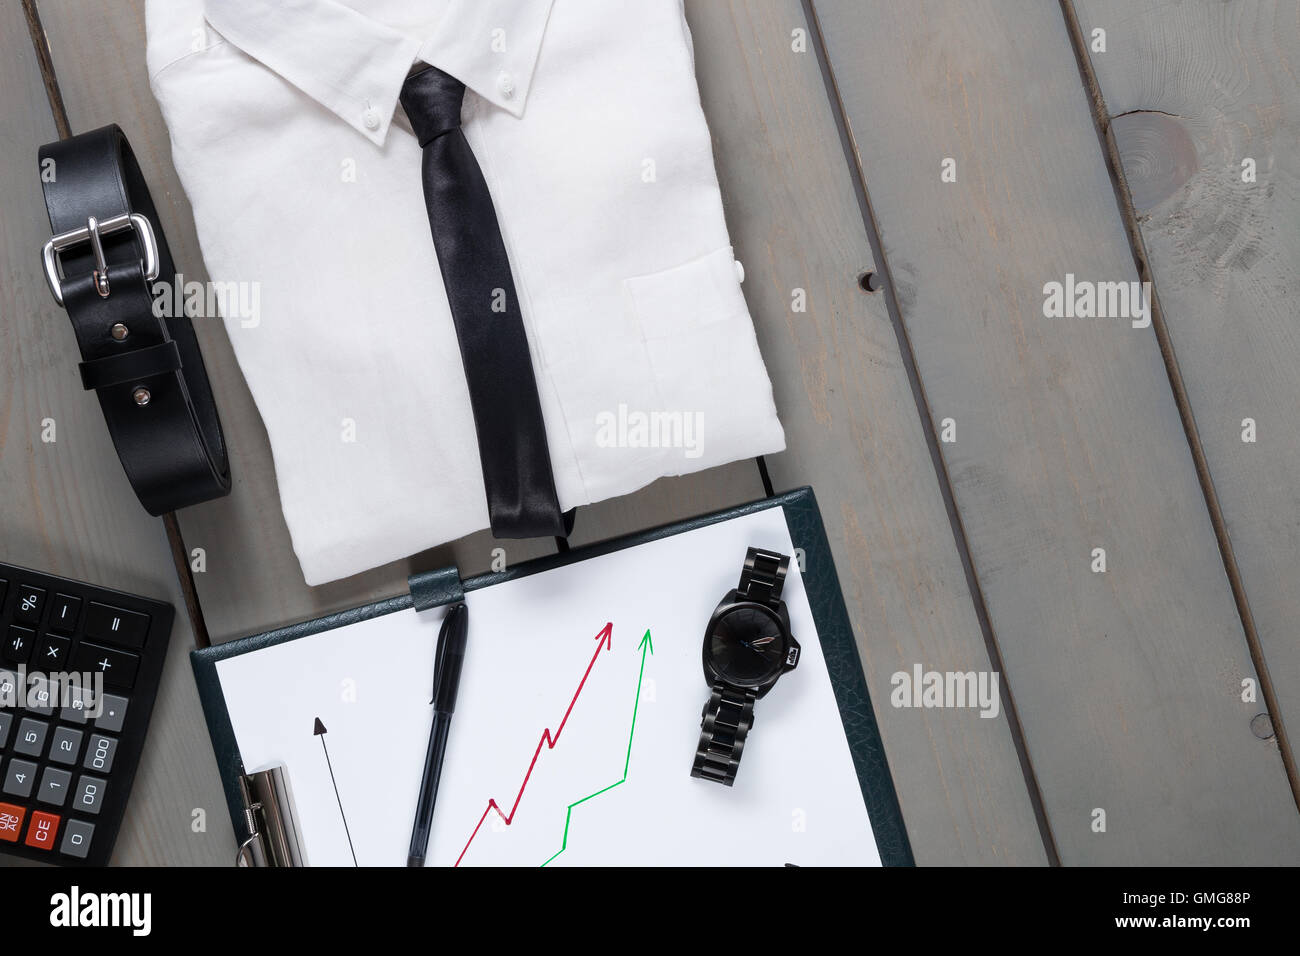 Geschäftsmann, arbeiten Outfit auf grau Holz- Hintergrund. weißes Hemd mit  schwarzer Krawatte, Uhren, Gürtel, planchette und Rechner. Zurück zu  Stockfotografie - Alamy